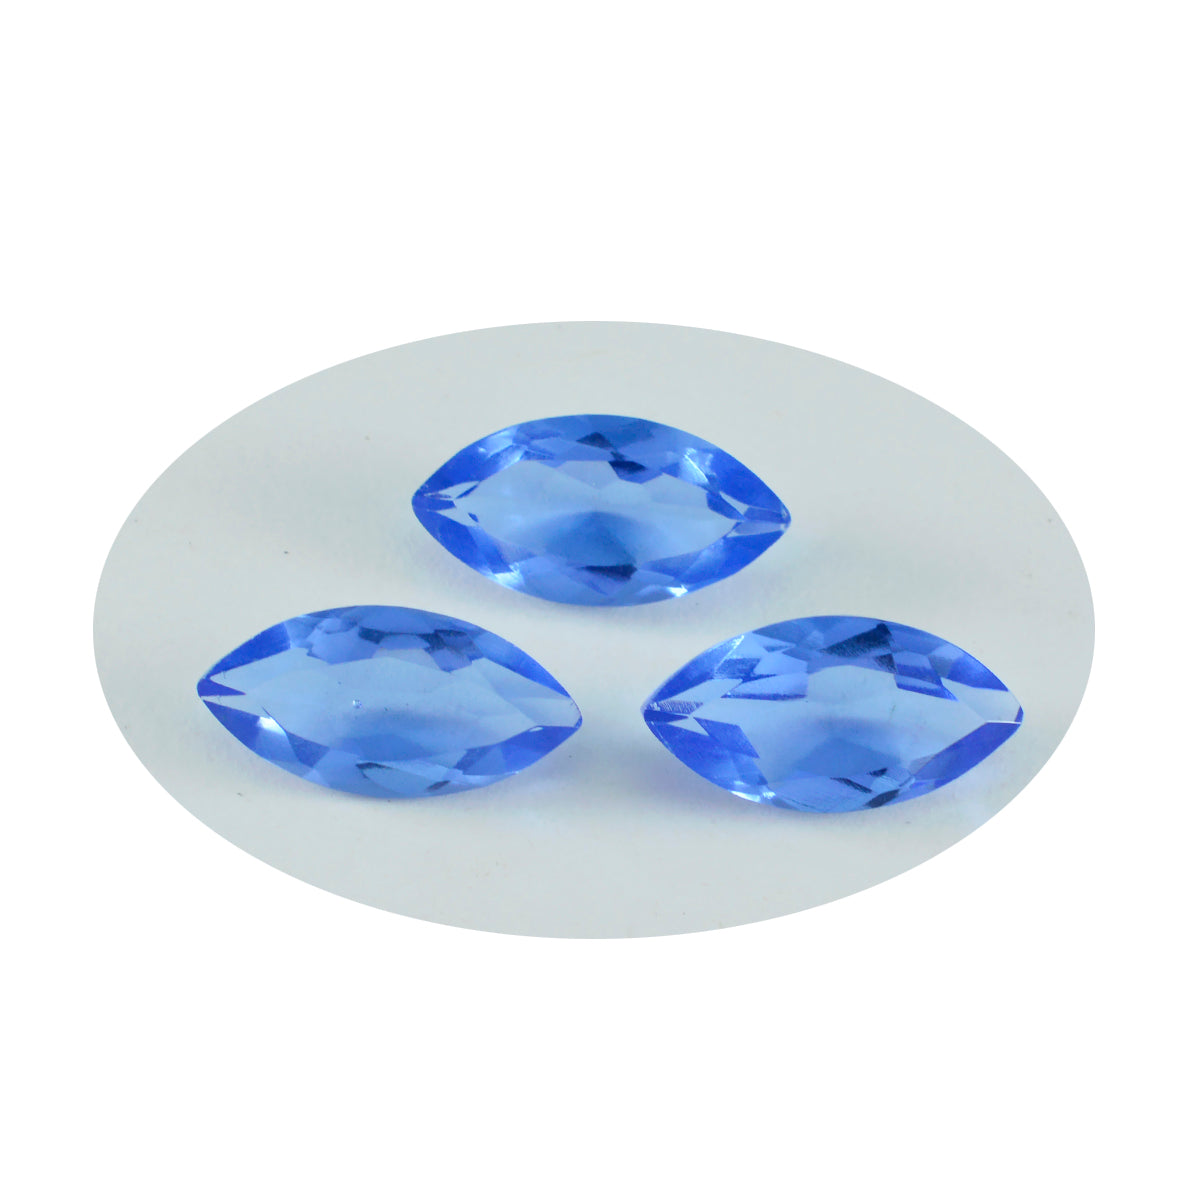 riyogems 1 шт. синий сапфир cz ограненный 9x18 мм милый качественный драгоценный камень в форме маркизы